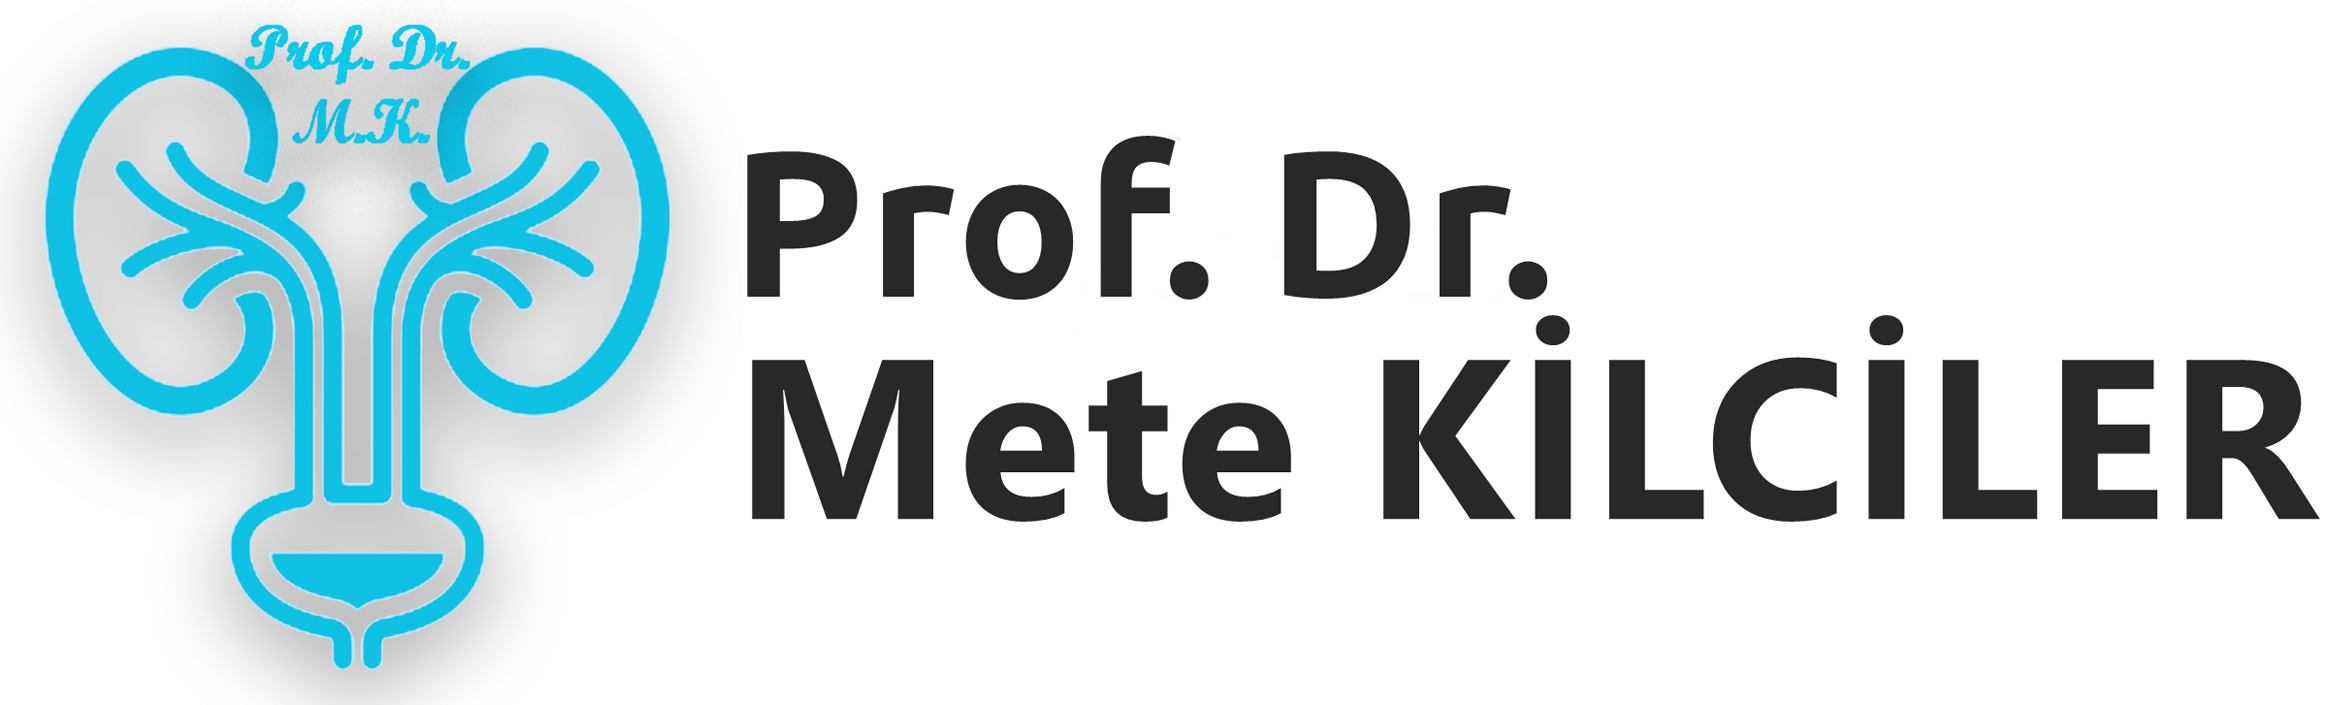 Prof. Dr. Mete Kilciler